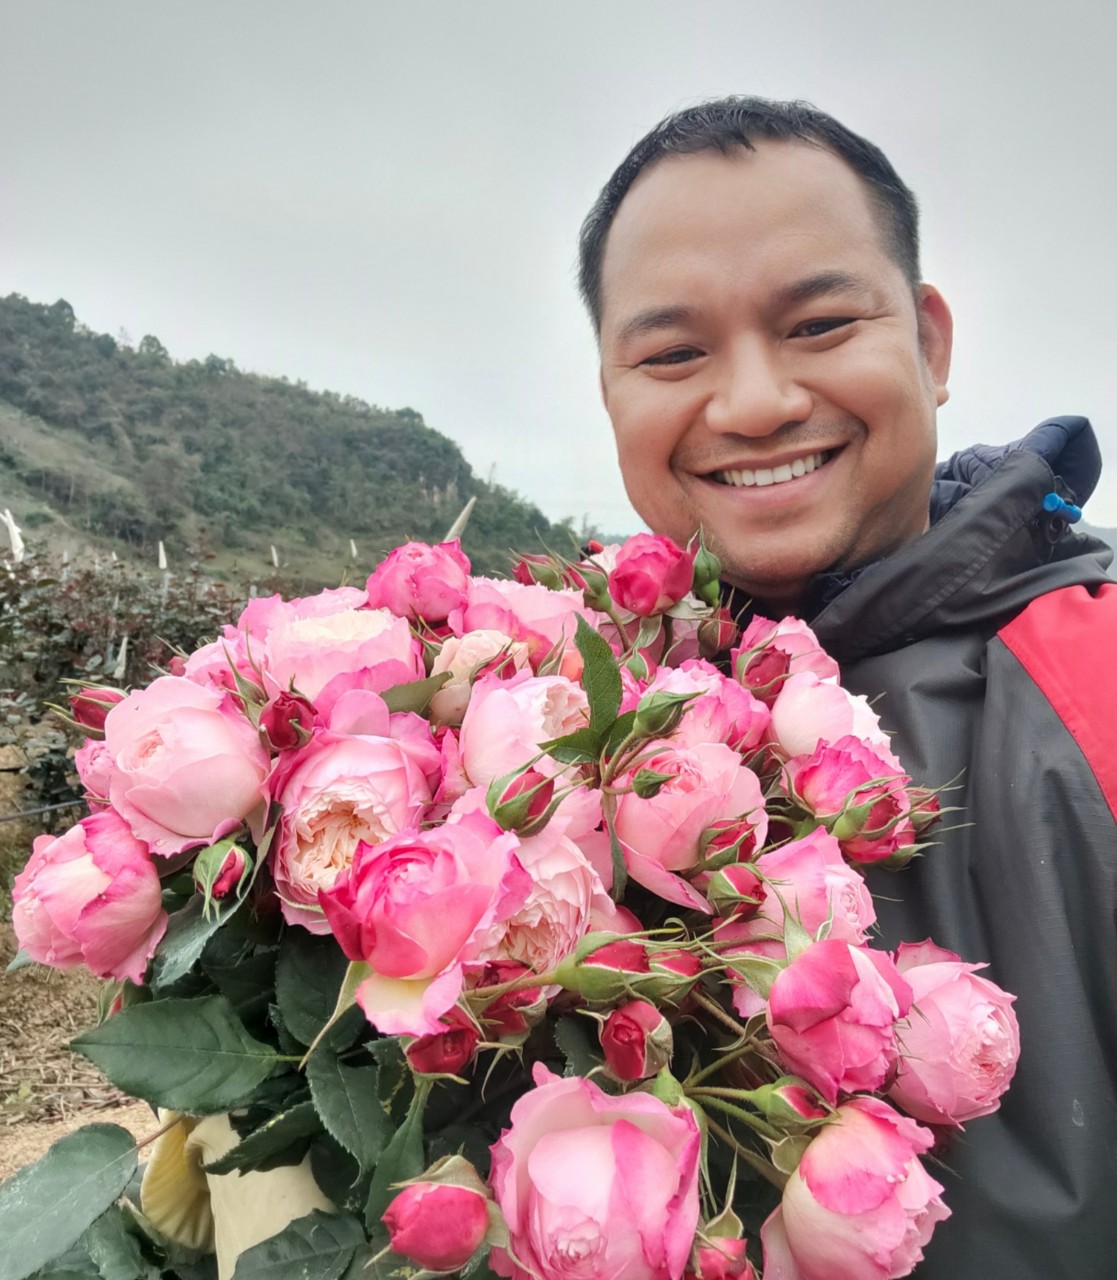 Chàng Trai Khởi Nghiệp Thành Công Nhờ Trồng Hoa – Với Thương Hiệu Hoa Tây Bắc Cung Cấp hoa hồng đỏ pháp, hoa hồng ngoại Lai Châu,…Uy Tín